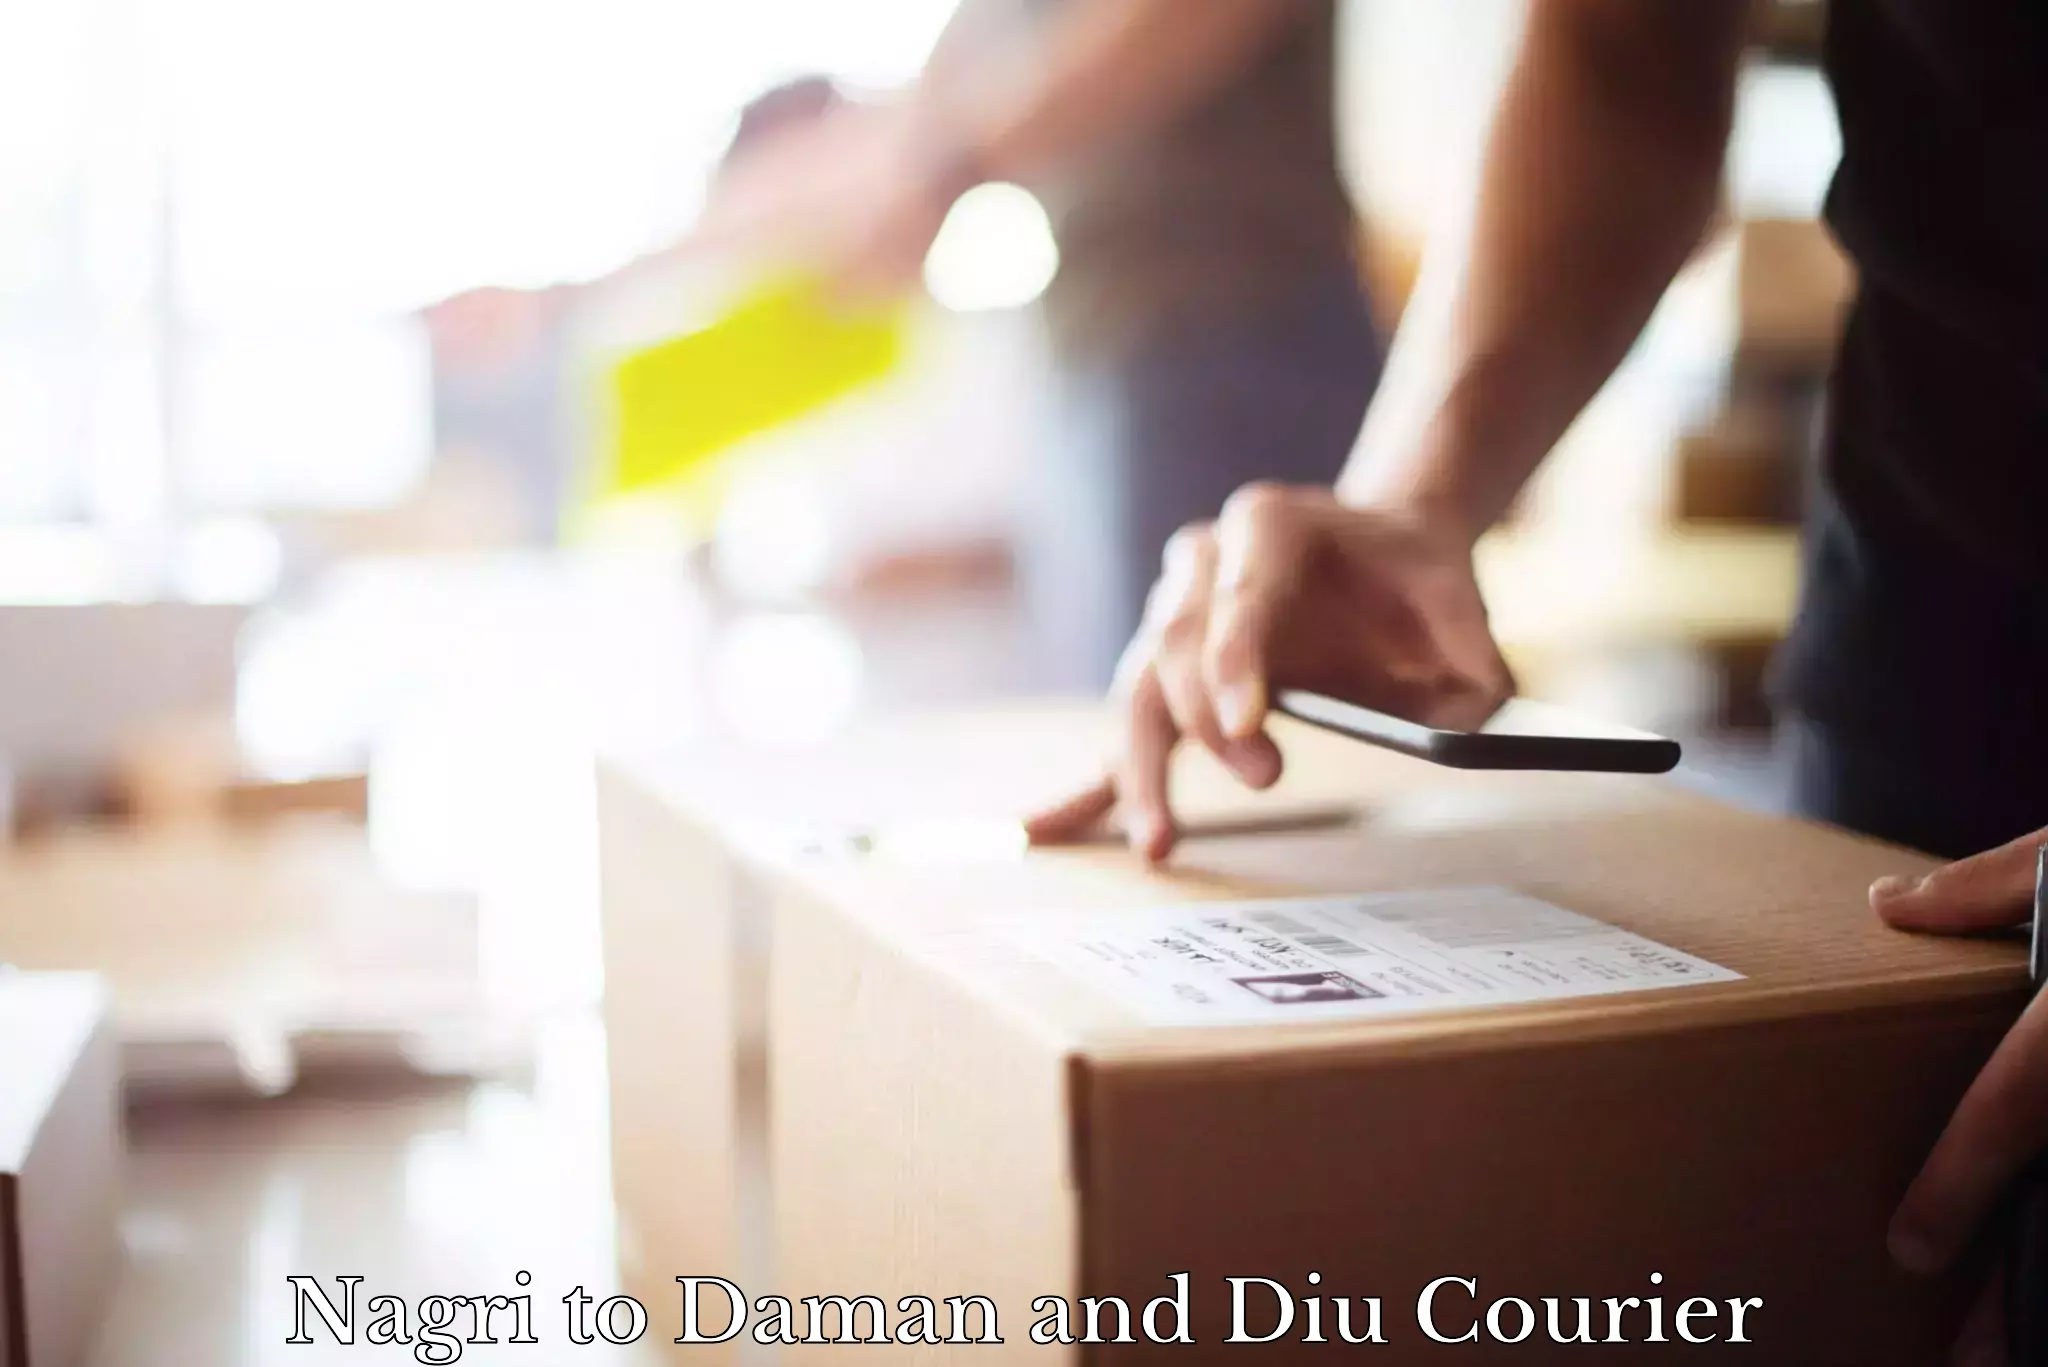 Versatile courier options Nagri to Daman and Diu